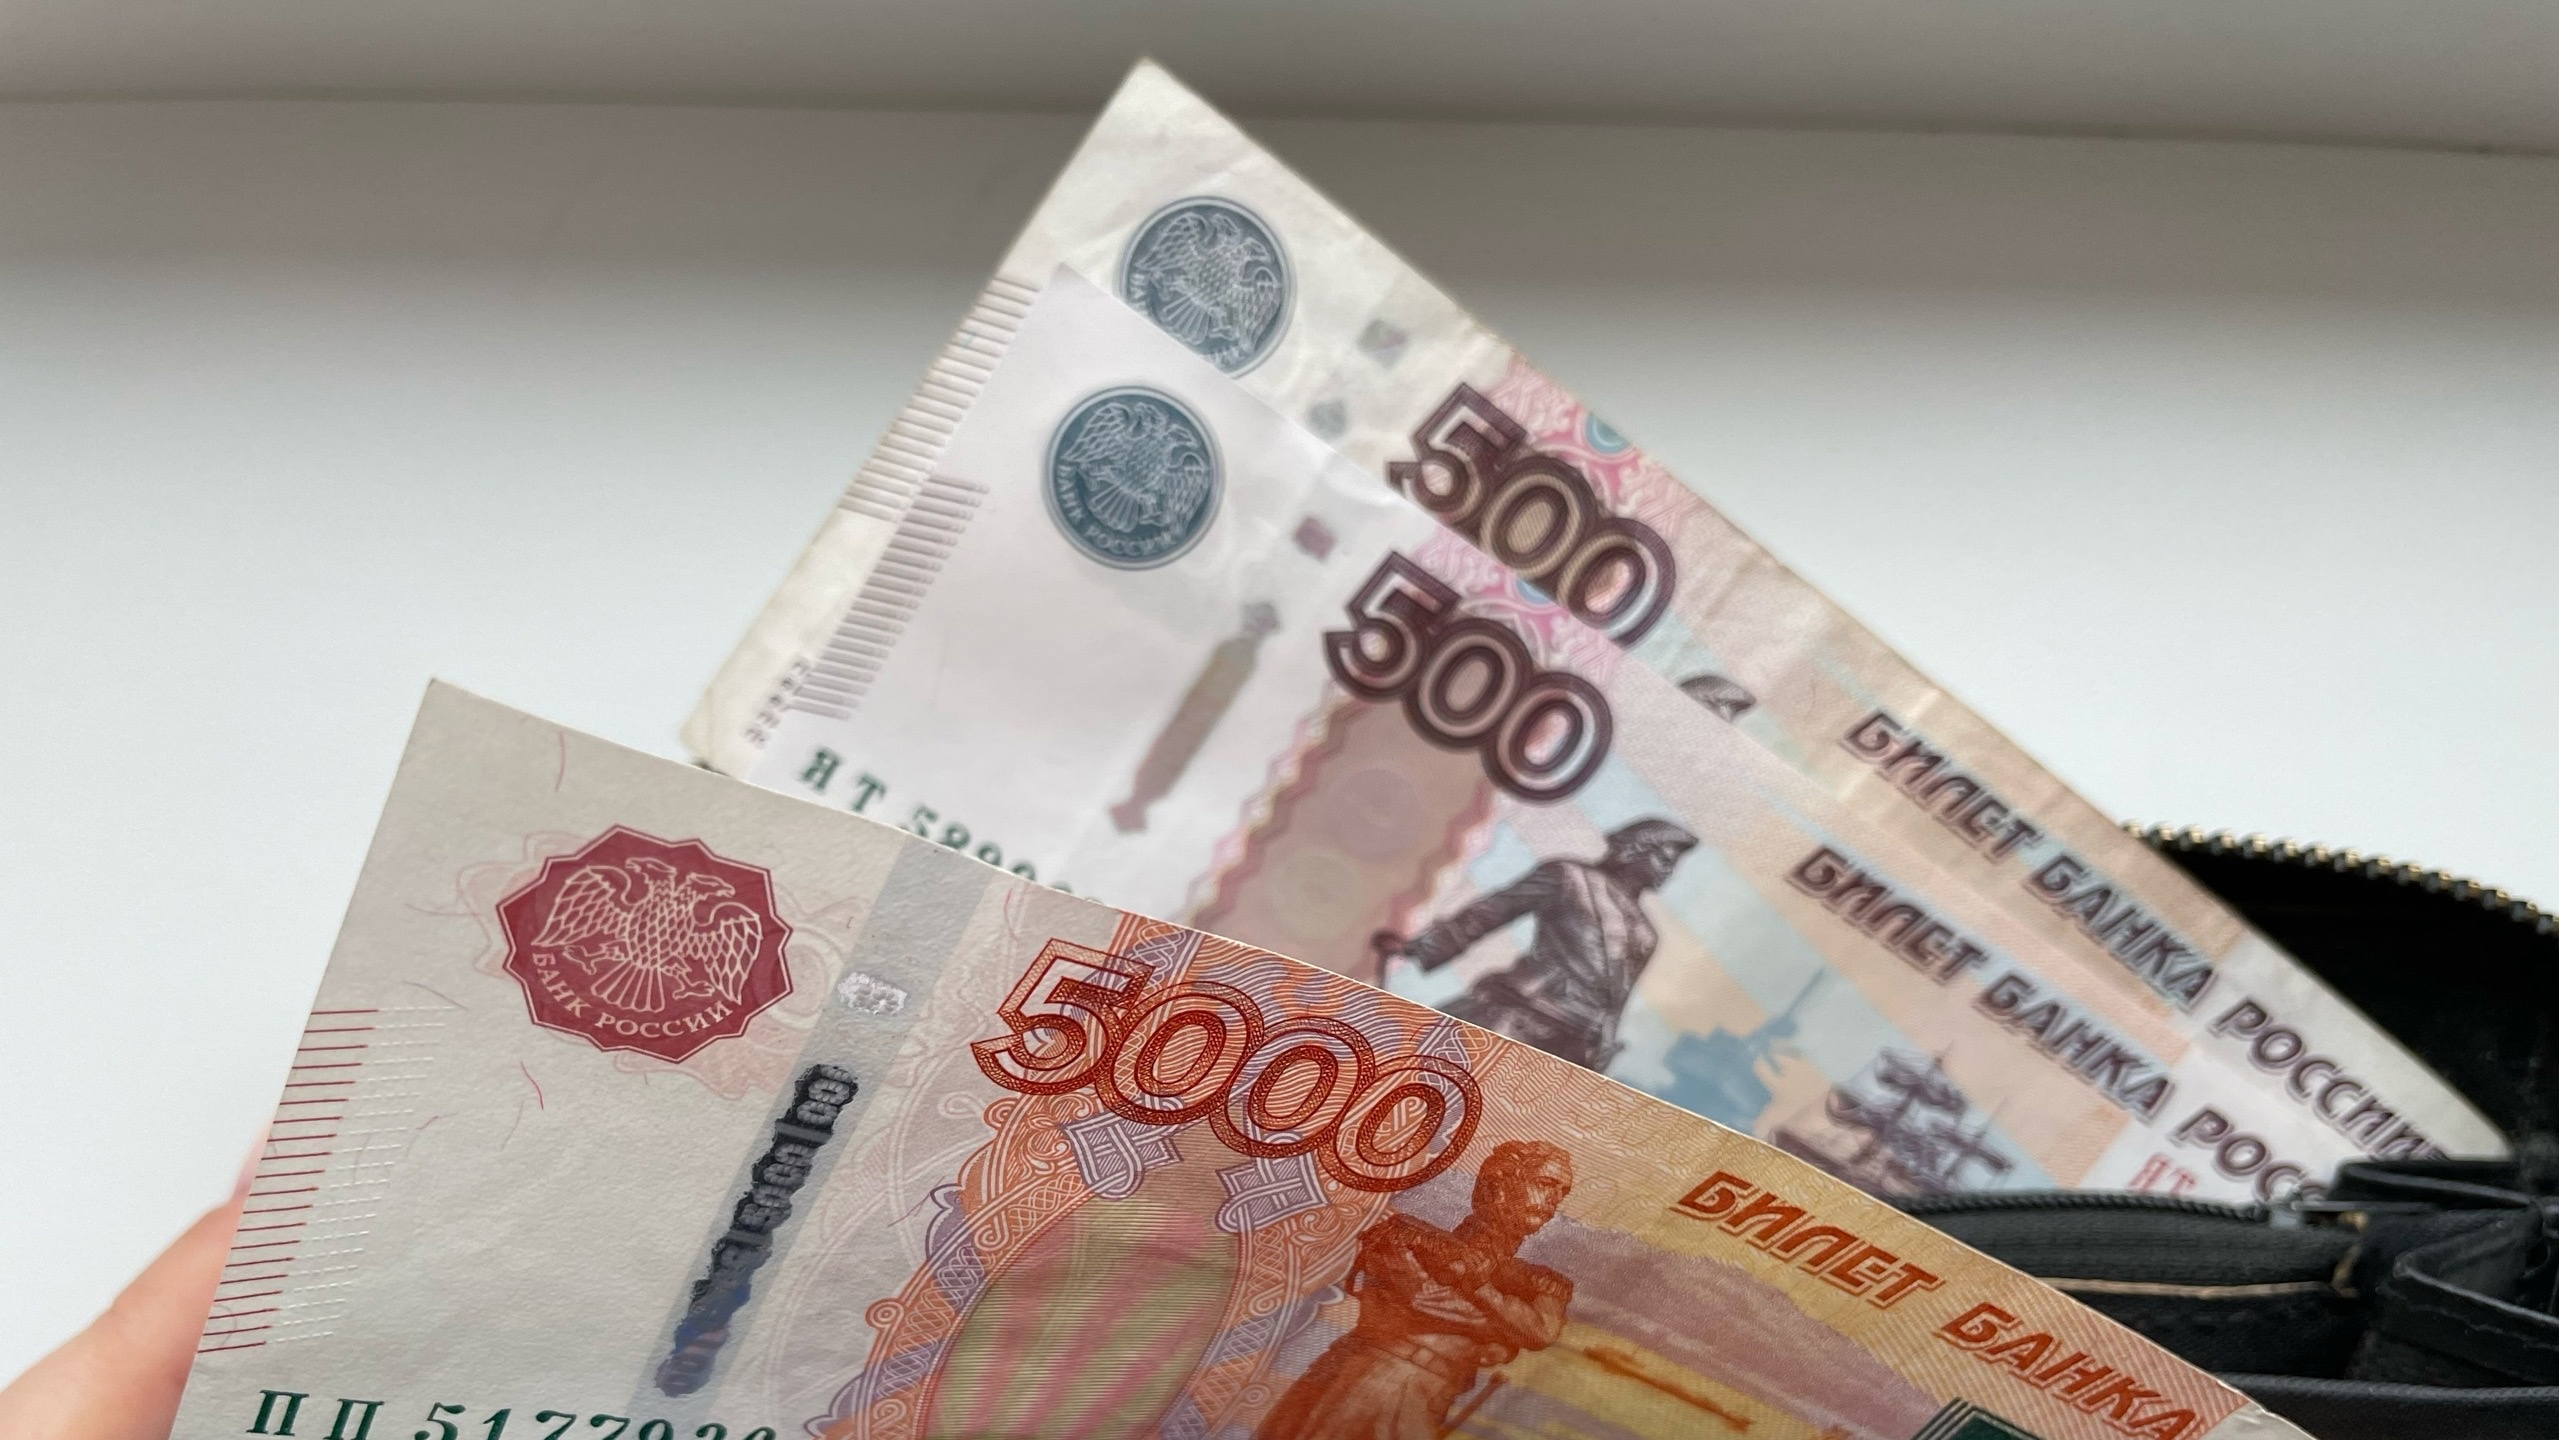 Взял кредит, продал машину: пенсионер из Димитровграда пообщался с неизвестными по телефону и потерял 900 тысяч рублей